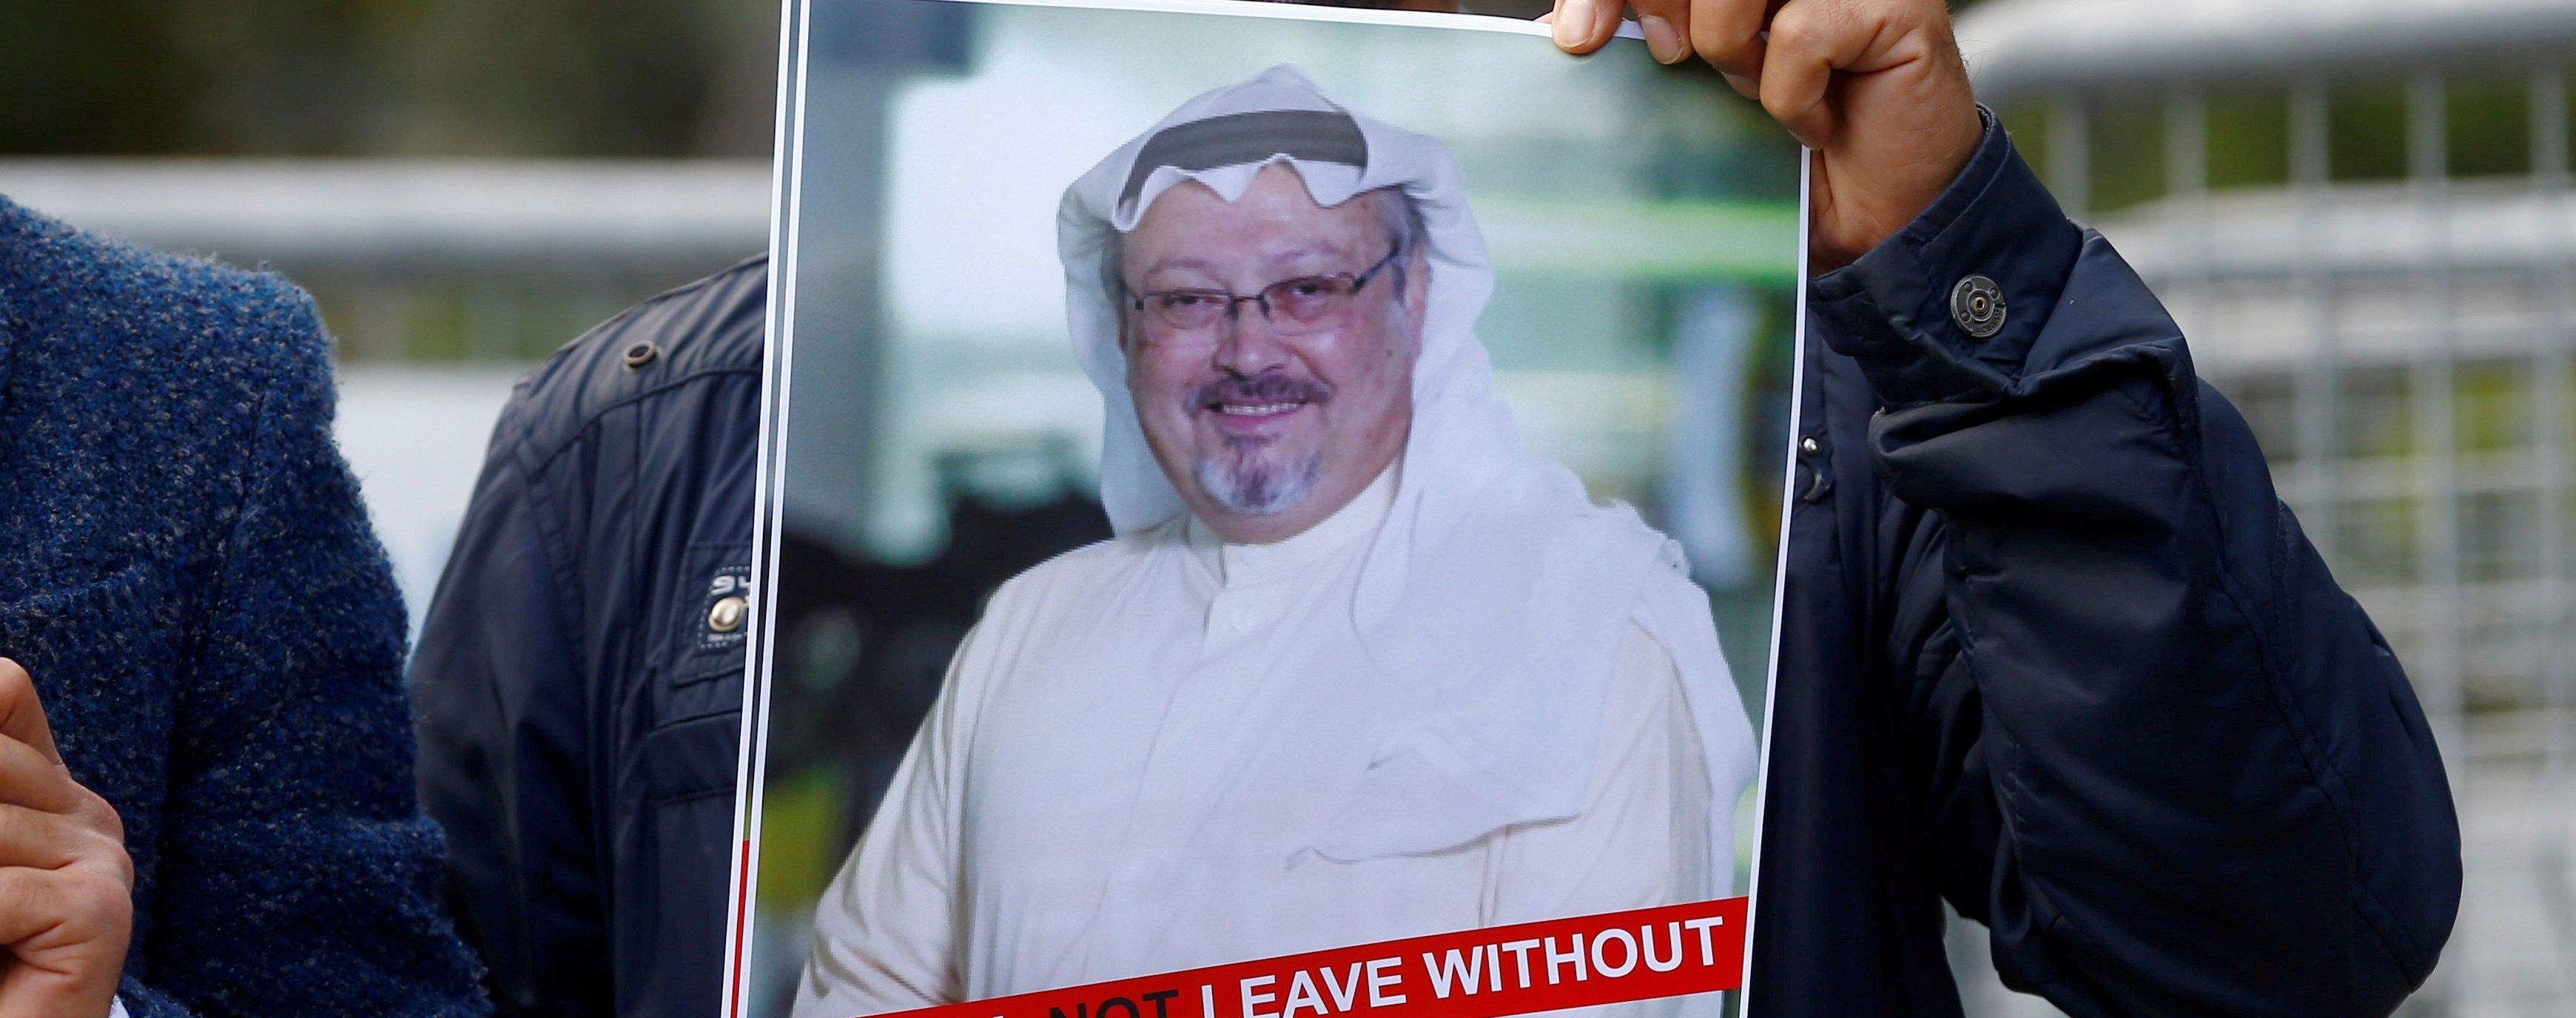 Саудовская Аравия направила следователей "замести следы" убийства журналиста Хашогги